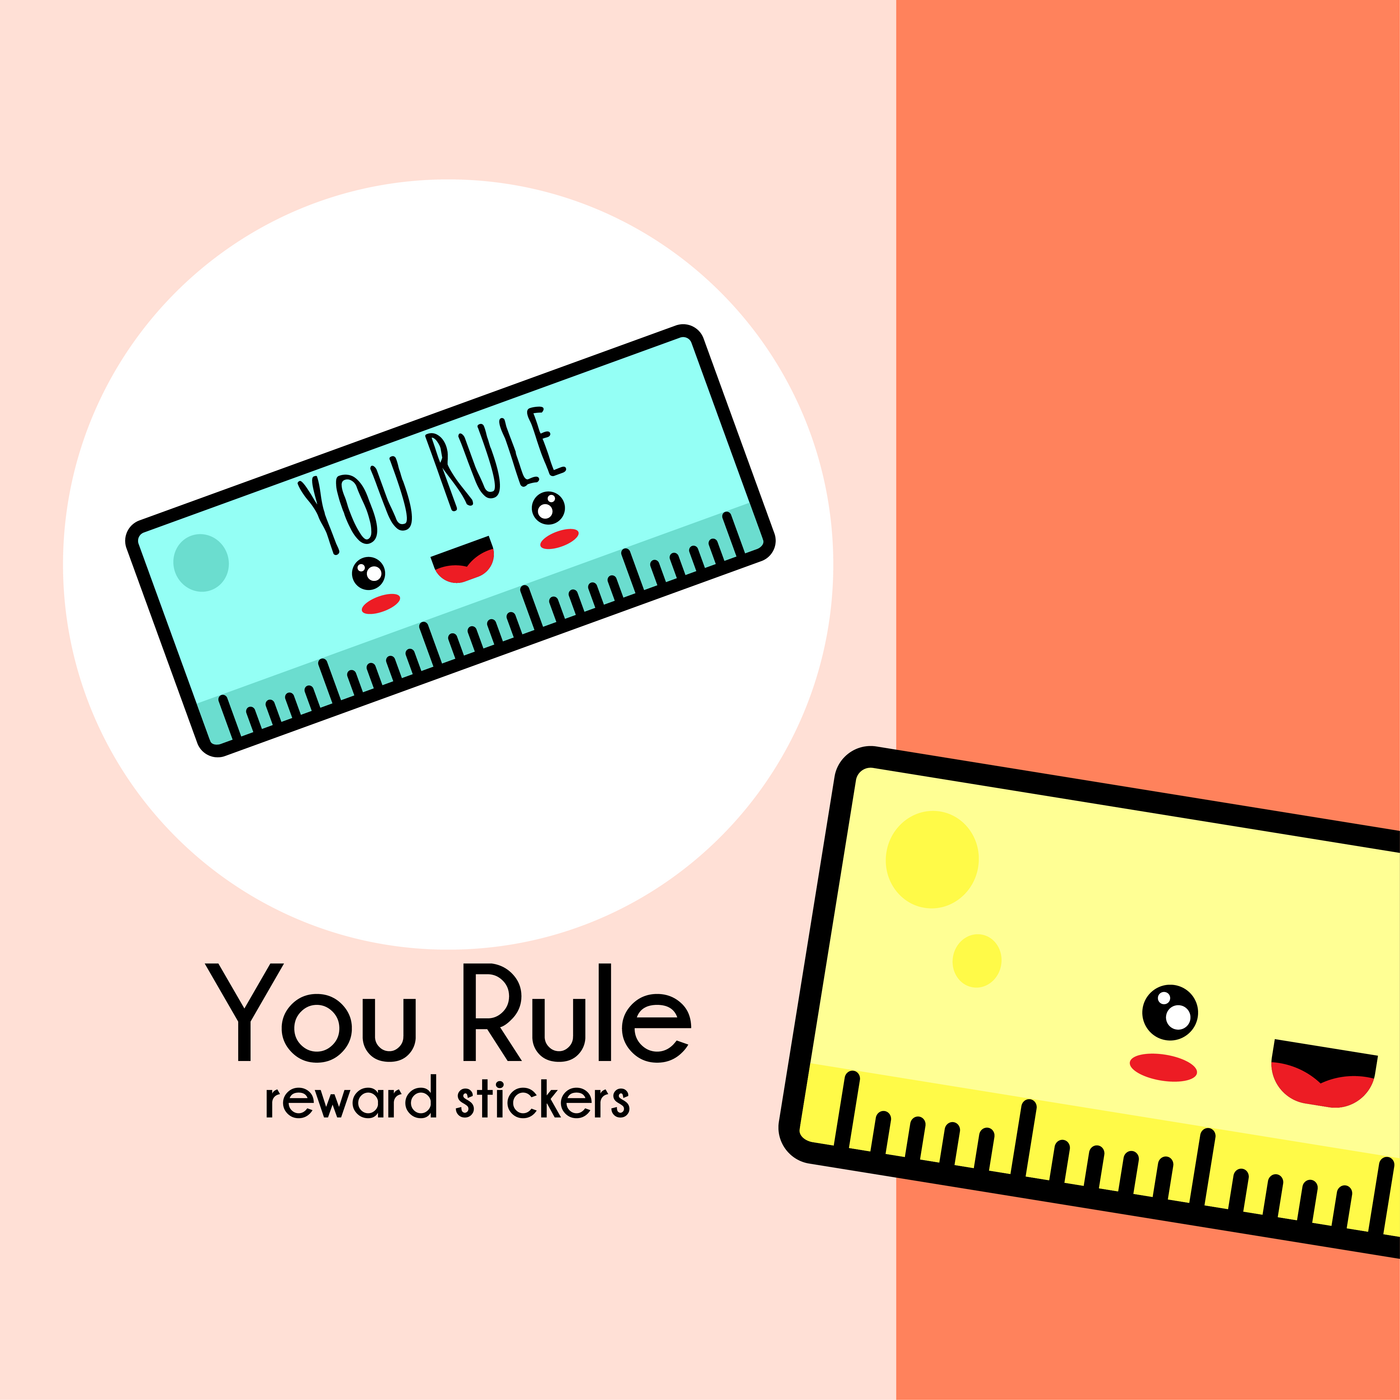 You Rule!